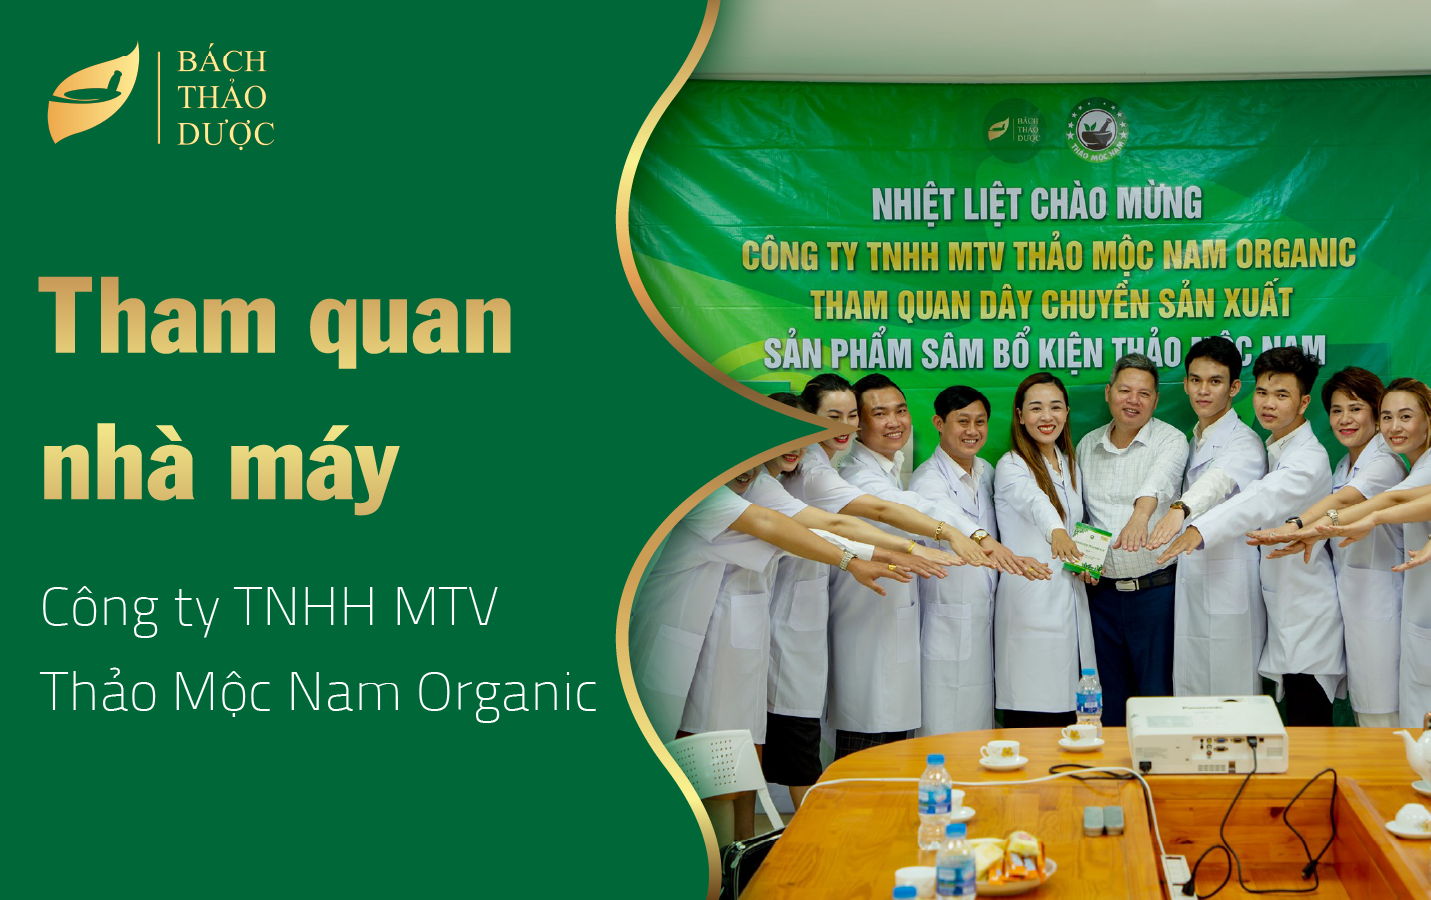 Bách Thảo Dược chào mừng Quý đối tác Công ty TNHH MTV THẢO MỘC NAM ORGANIC đến tham quan nhà máy